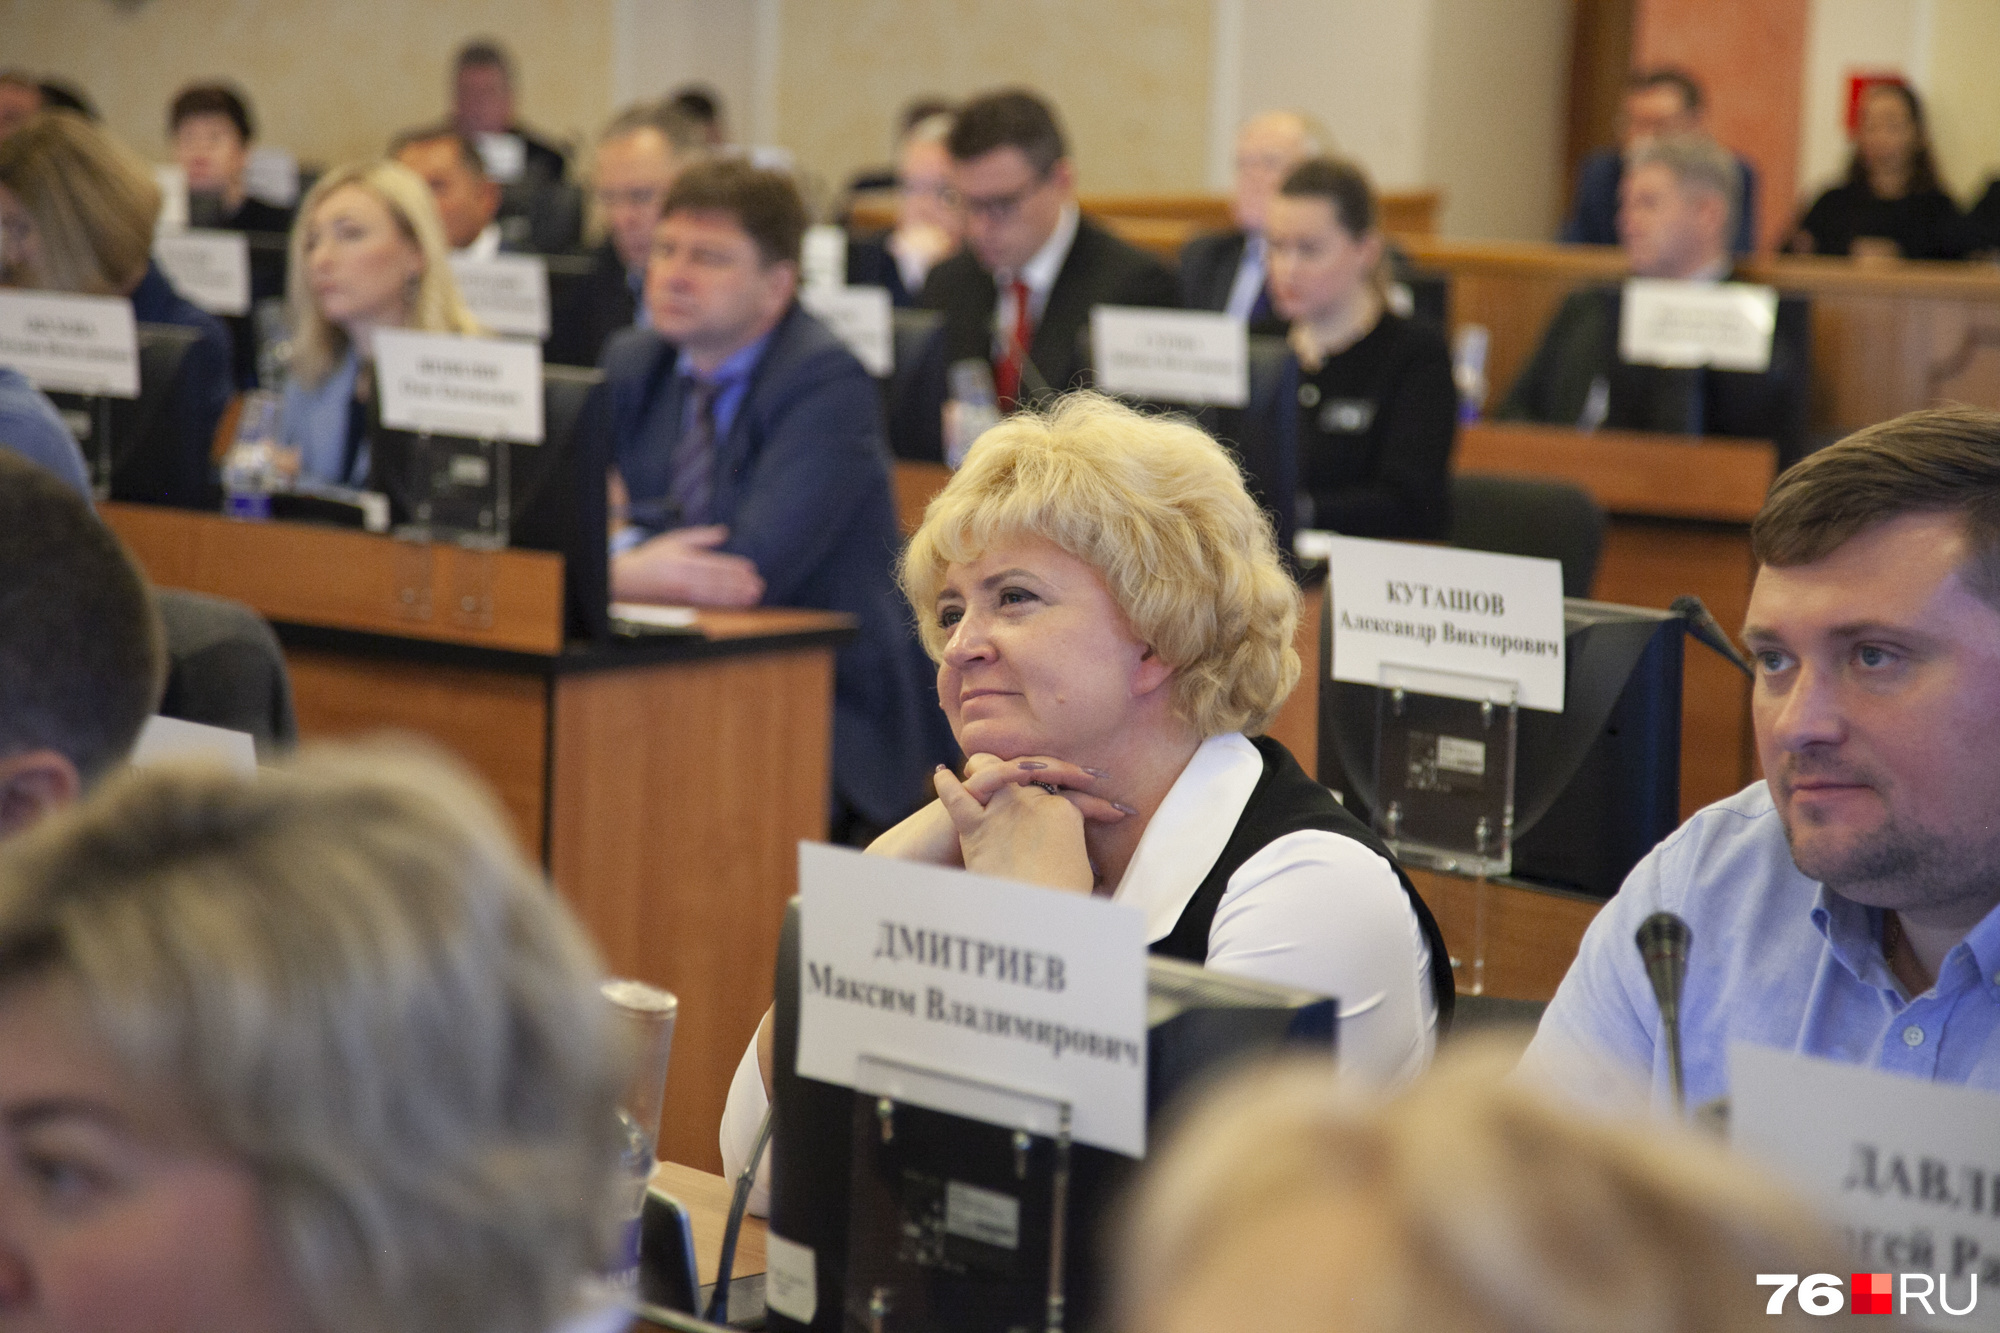 Так в зале слушали кандидата Артема Молчанова — с благоговейными улыбками